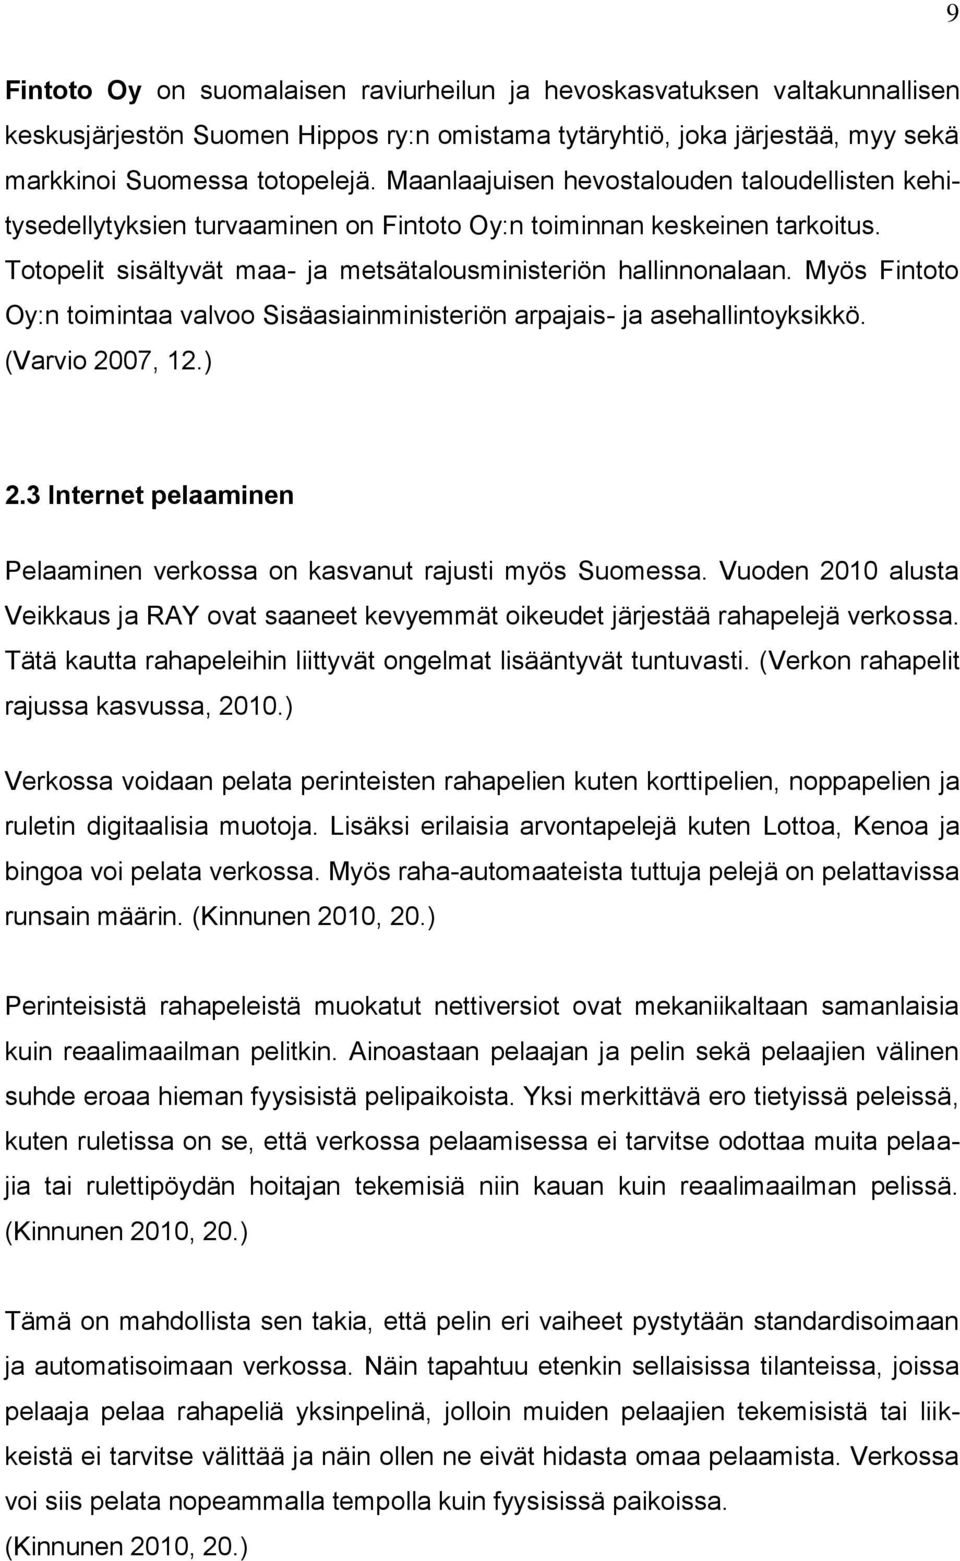 Myös Fintoto Oy:n toimintaa valvoo Sisäasiainministeriön arpajais- ja asehallintoyksikkö. (Varvio 2007, 12.) 2.3 Internet pelaaminen Pelaaminen verkossa on kasvanut rajusti myös Suomessa.